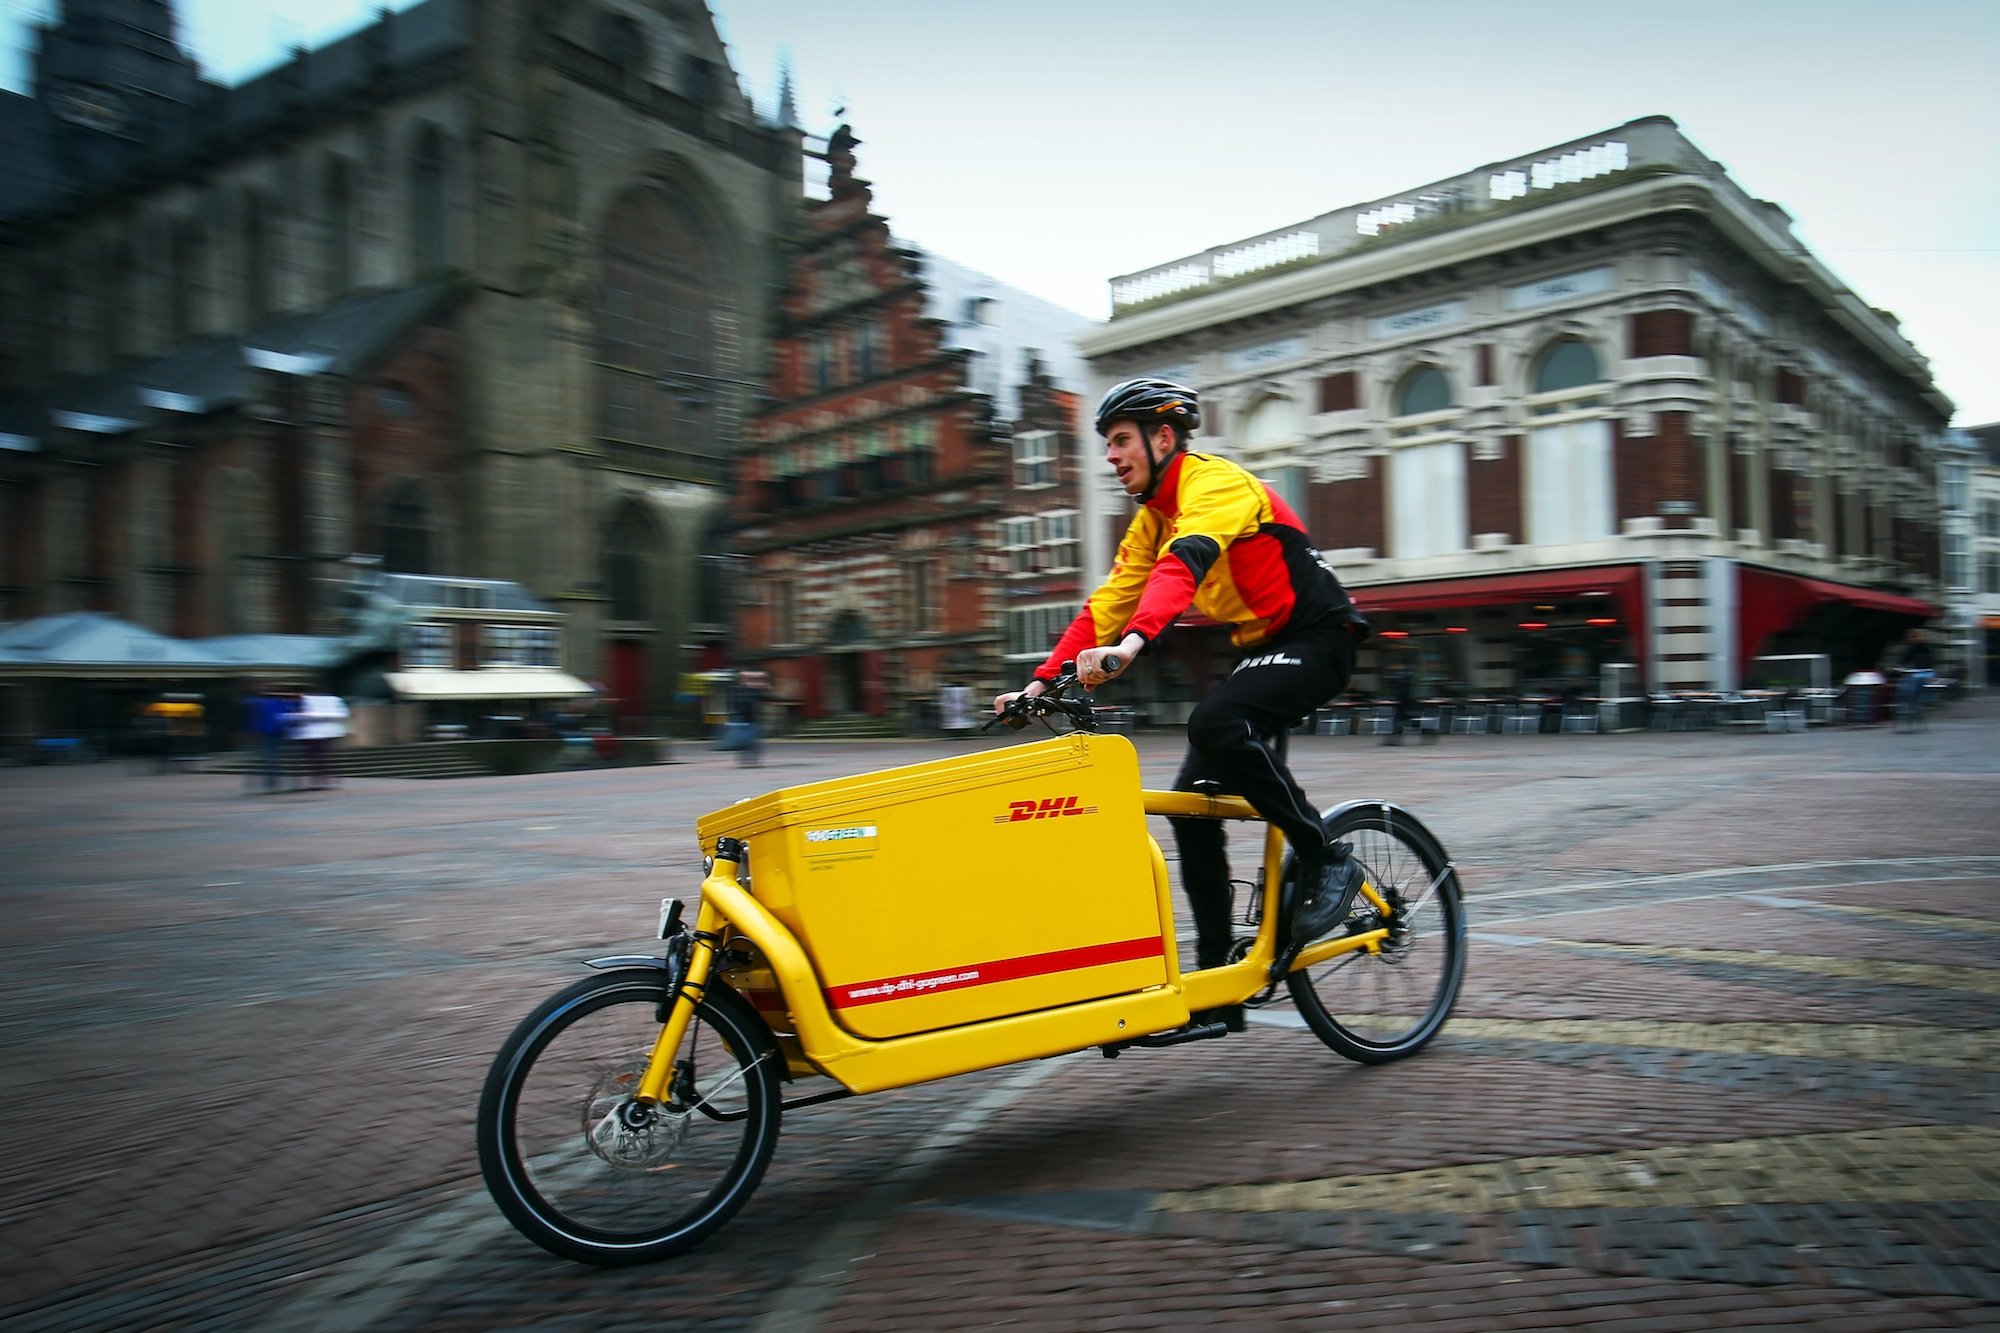 DHL-Lastenrad in Haarlem in den Niederlanden: In vielen Städten Europas übernehmen Lastenräder bereits wichtige Transportdienste. DHL Express testet Lastenräder auch in Städten wie Athen, Luxemburg, Wien und Mailand.